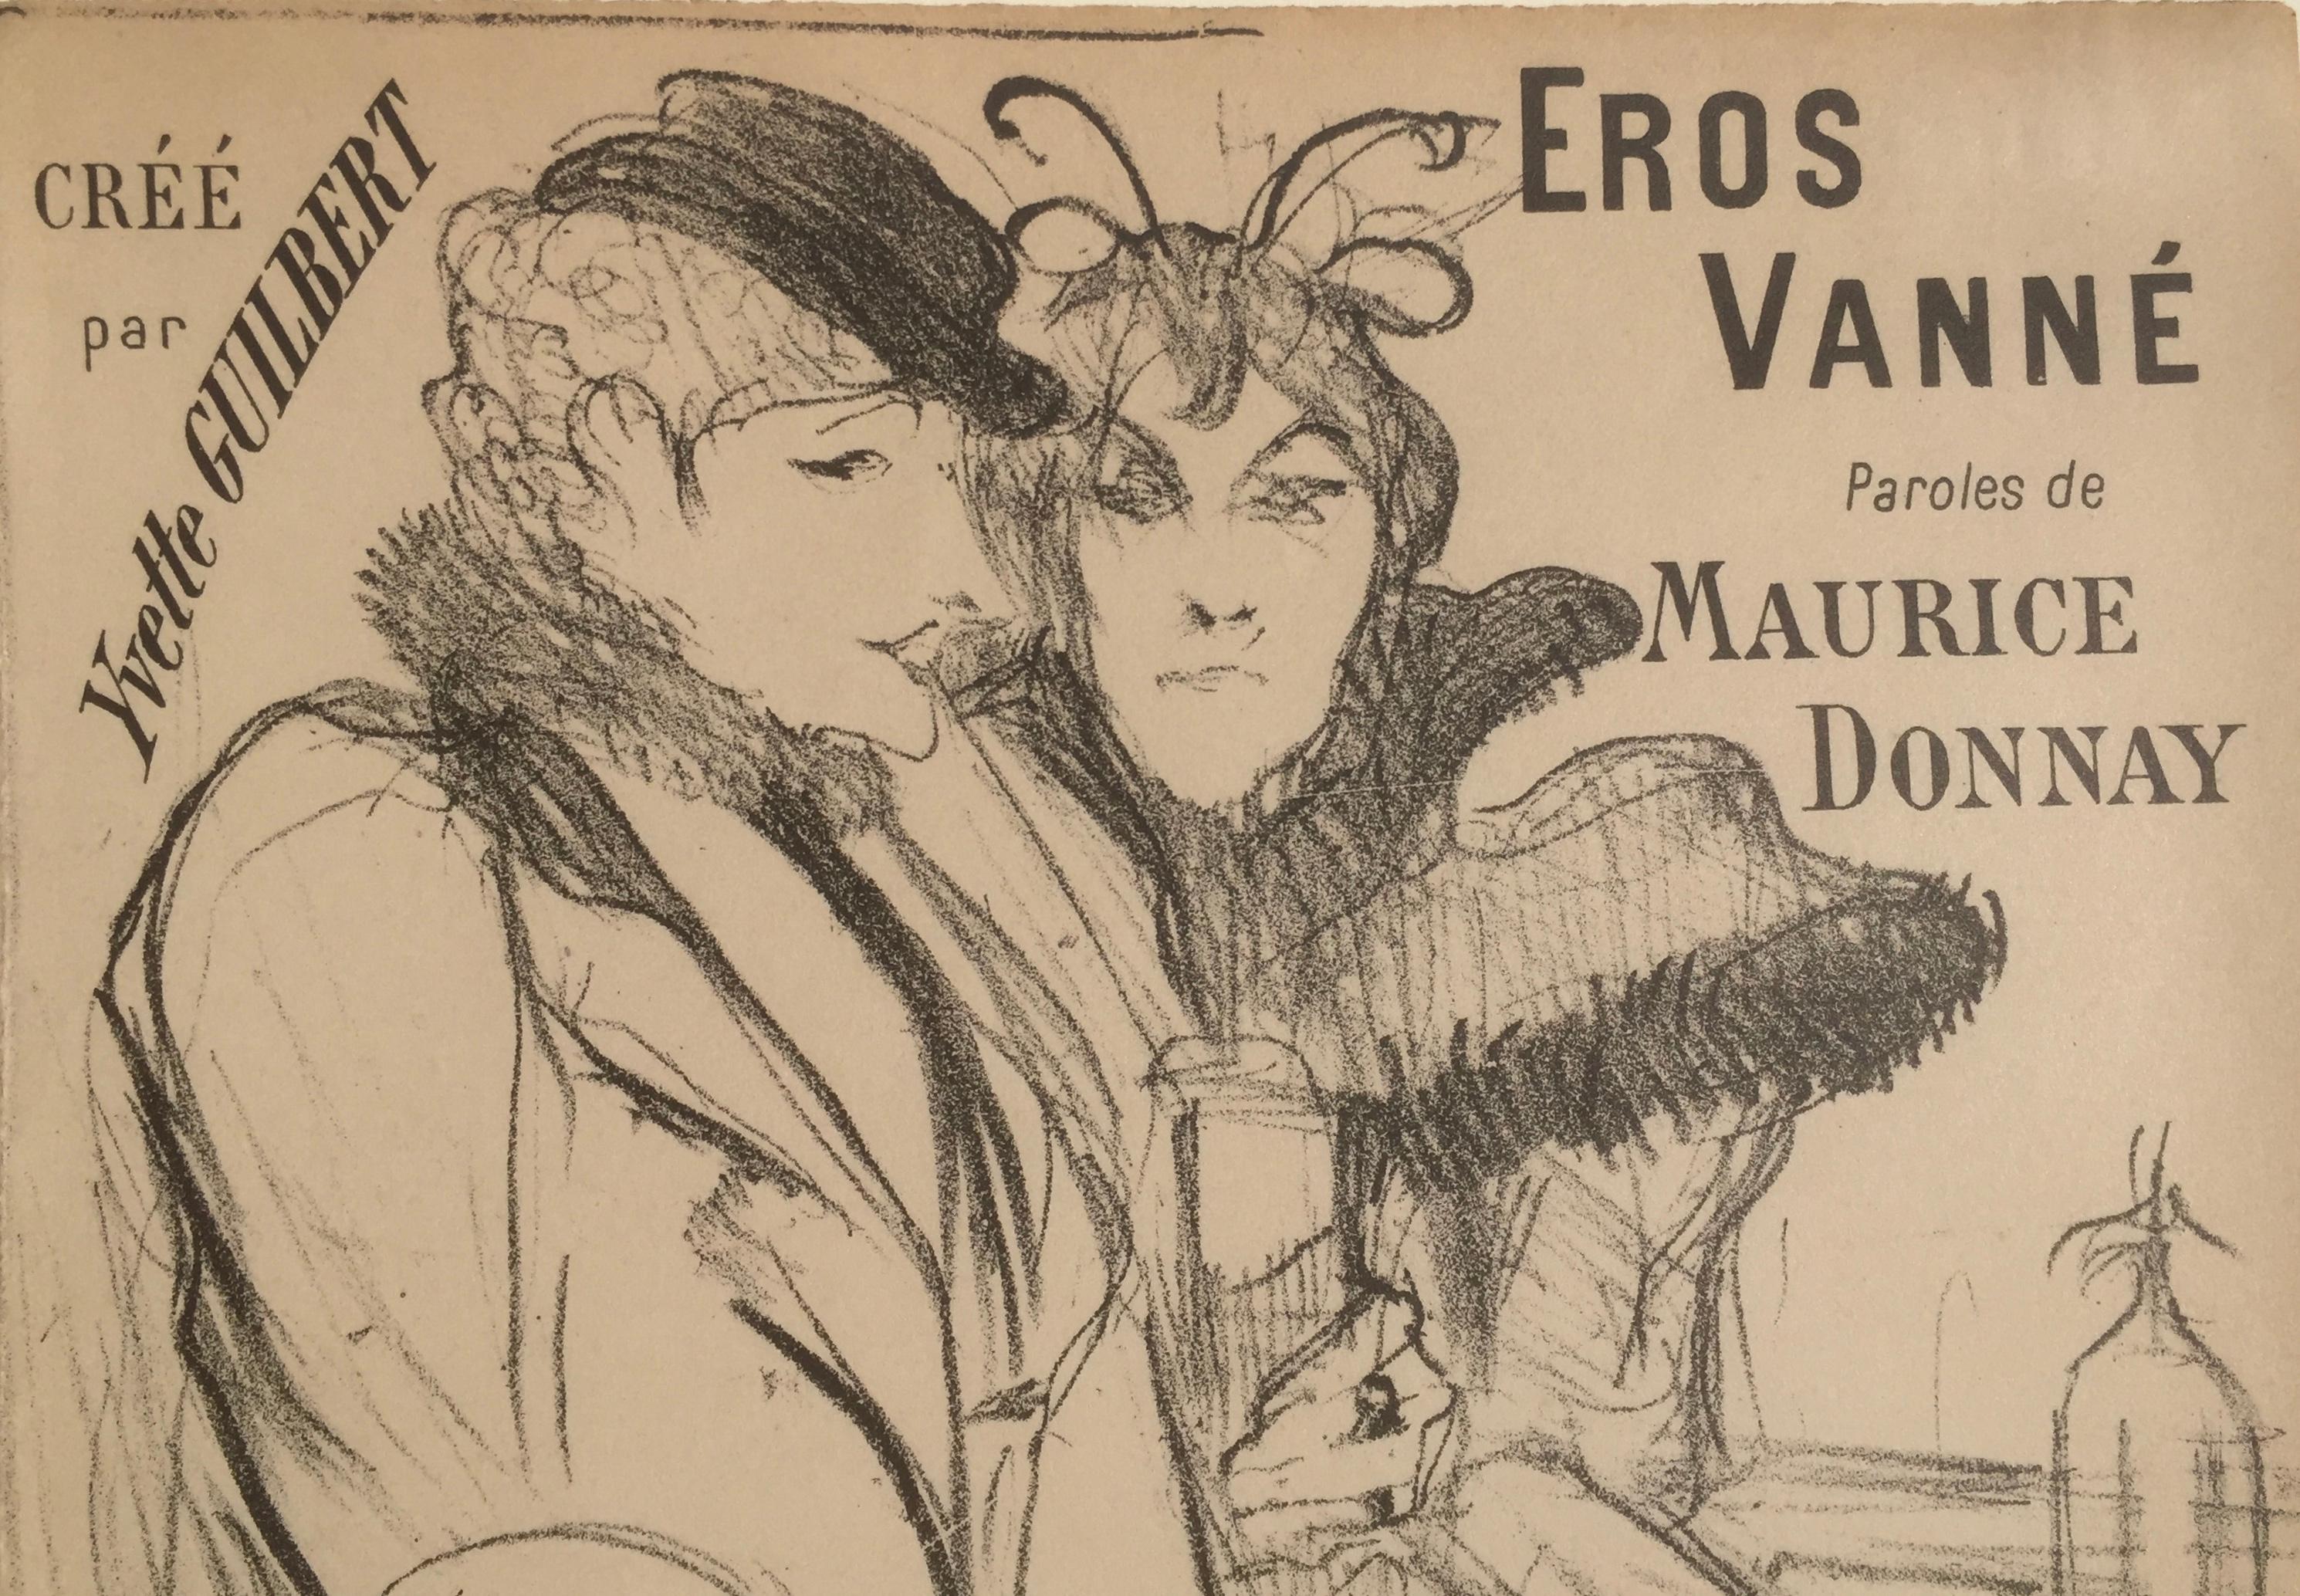 Eros Vanne - Cupid Exhausted - Print by Henri de Toulouse-Lautrec